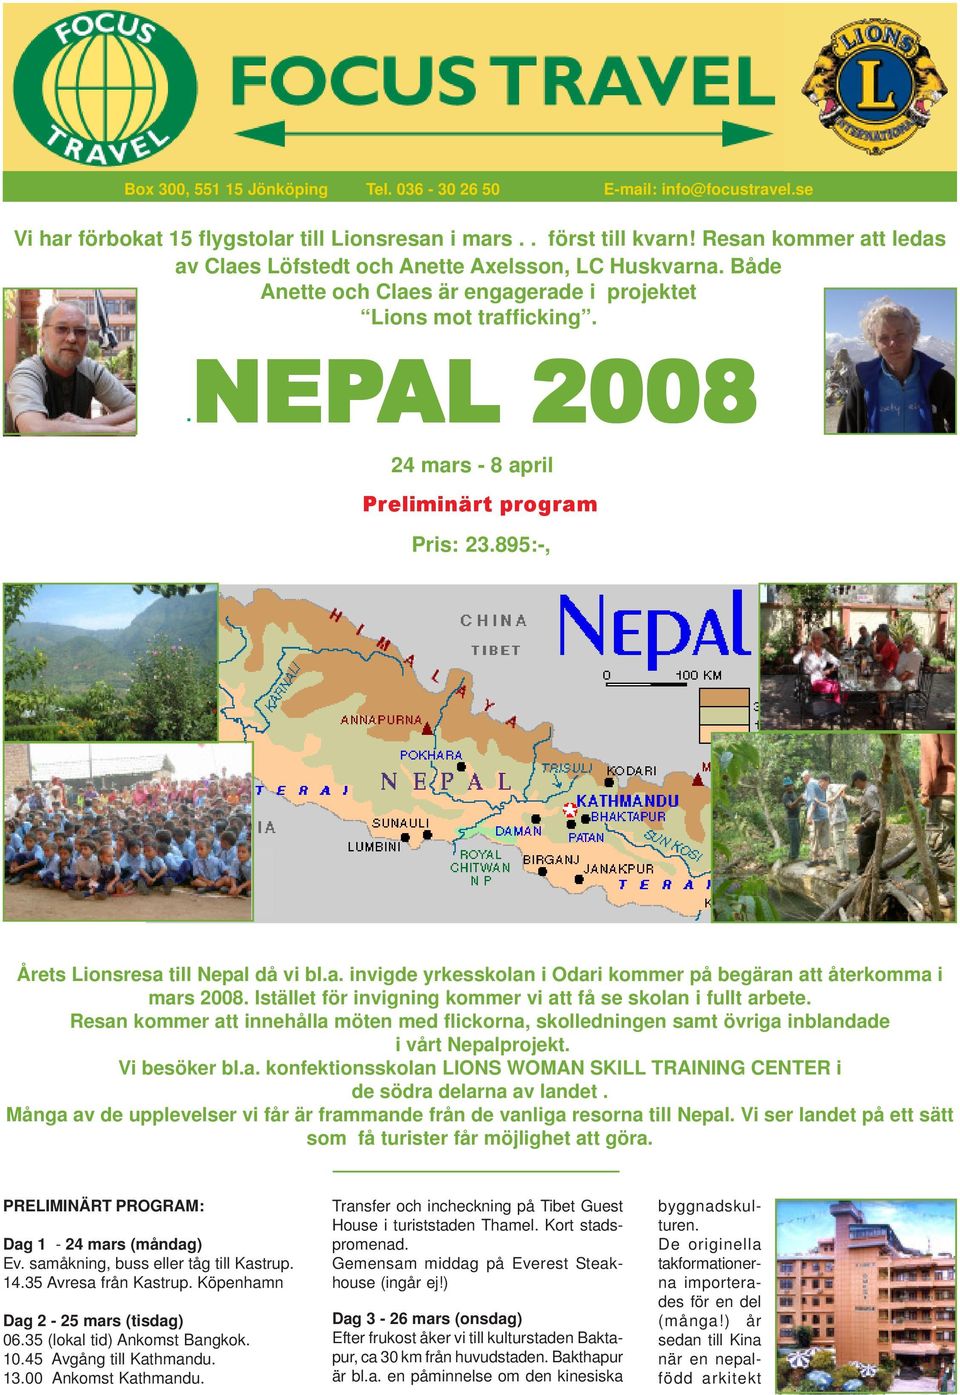 .nep NEPAL 2008 24 mars - 8 april Preliminärt program Pris: 23.895:-, Årets Lionsresa till Nepal då vi bl.a. invigde yrkesskolan i Odari kommer på begäran att återkomma i mars 2008.